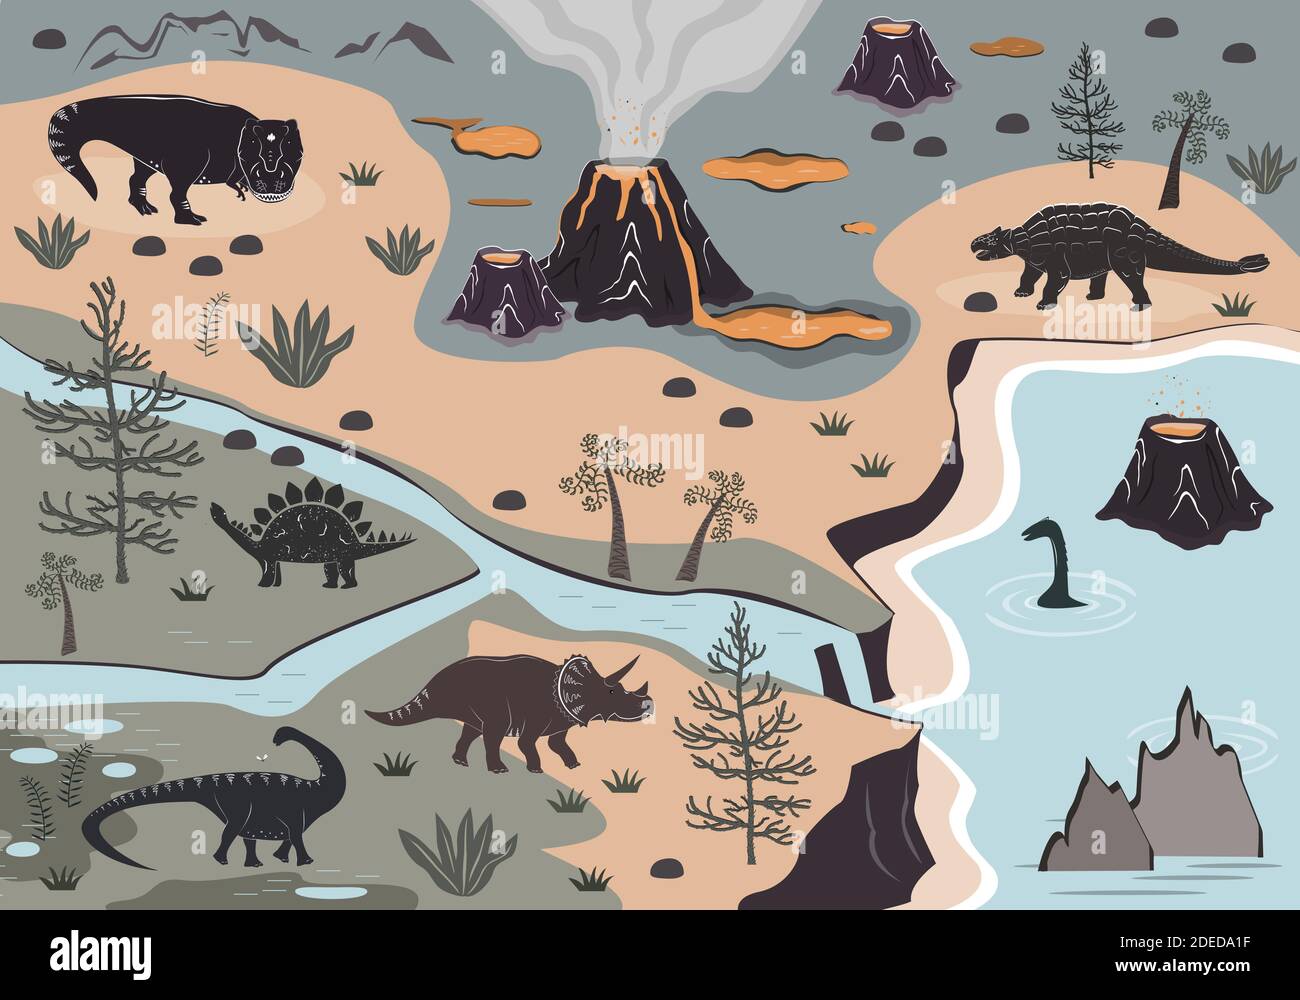 Cartoon Kinder Spielmatte mit Dinosaurier, Palmen und Vulkan Berge.  Vektorgrafik, Teppich oder Wandposter. Dino Hintergrund für die Kinder  Stock-Vektorgrafik - Alamy